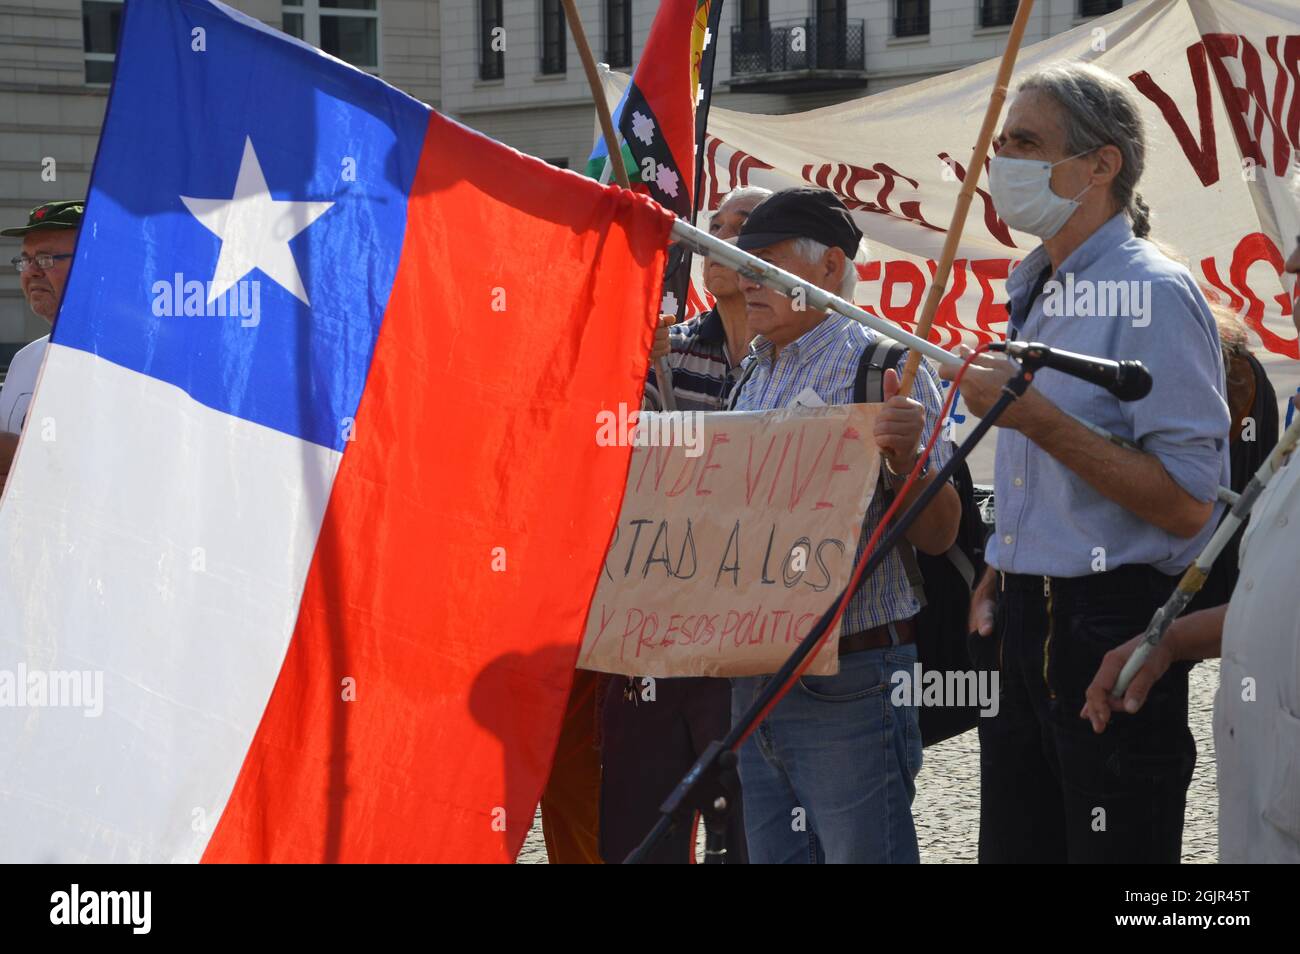 Der 42. Jahrestag des Militärputsches in Chile - Demonstration am Pariser Platz vor dem Brandenburger Tor in Berlin, Deutschland - 11. September 2021. Stockfoto